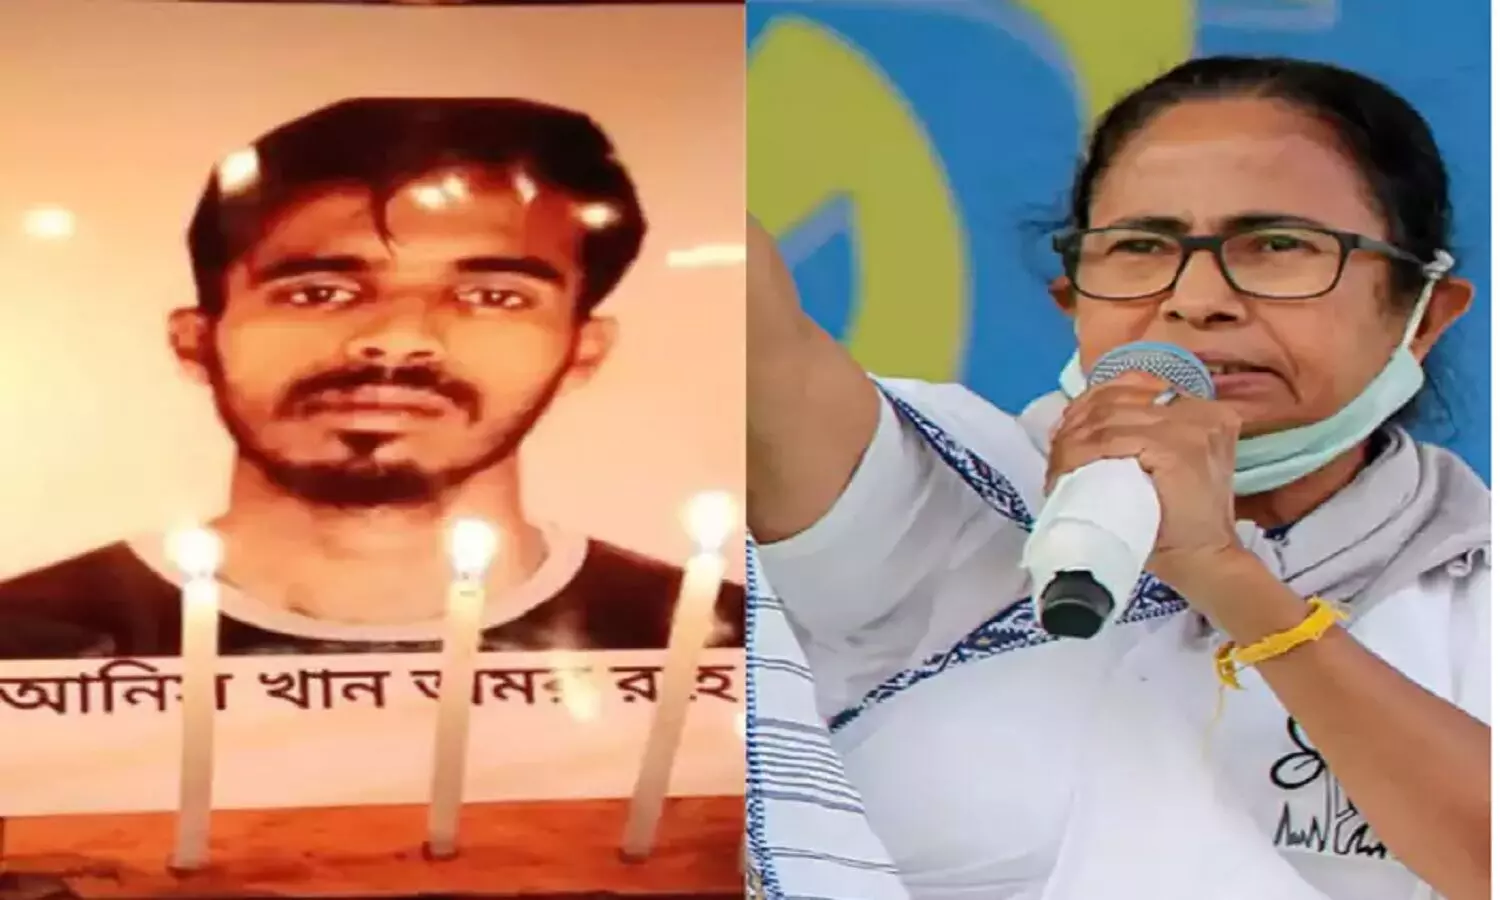 ममता बनर्जी के खिलाफ धरना दे रहे छात्र को पुलिस ने छत से फेंक कर मार डाला! आरोप तो यही हैं